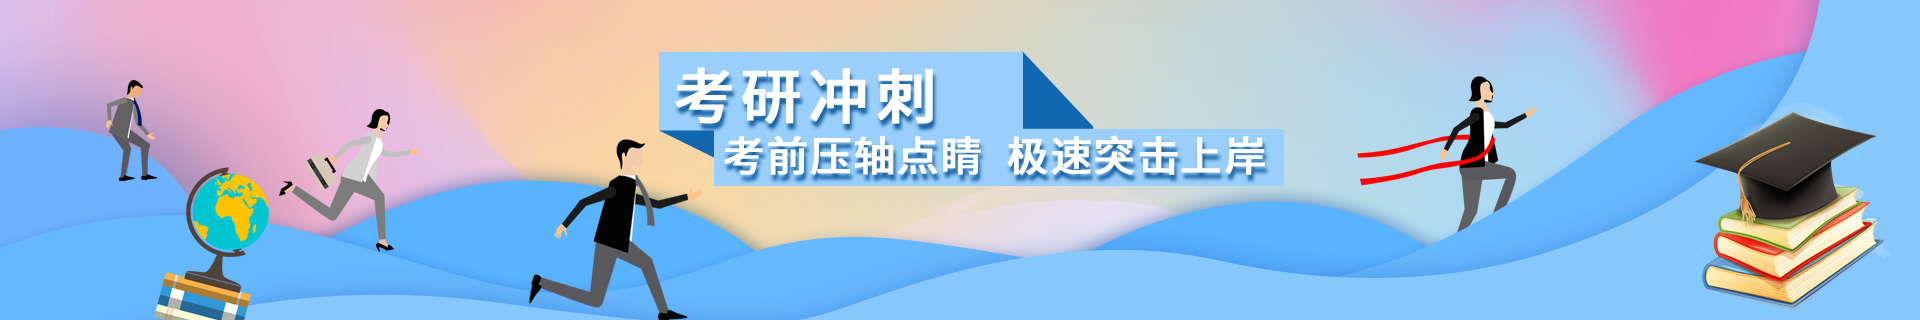 上海浦东跨考教育培训机构